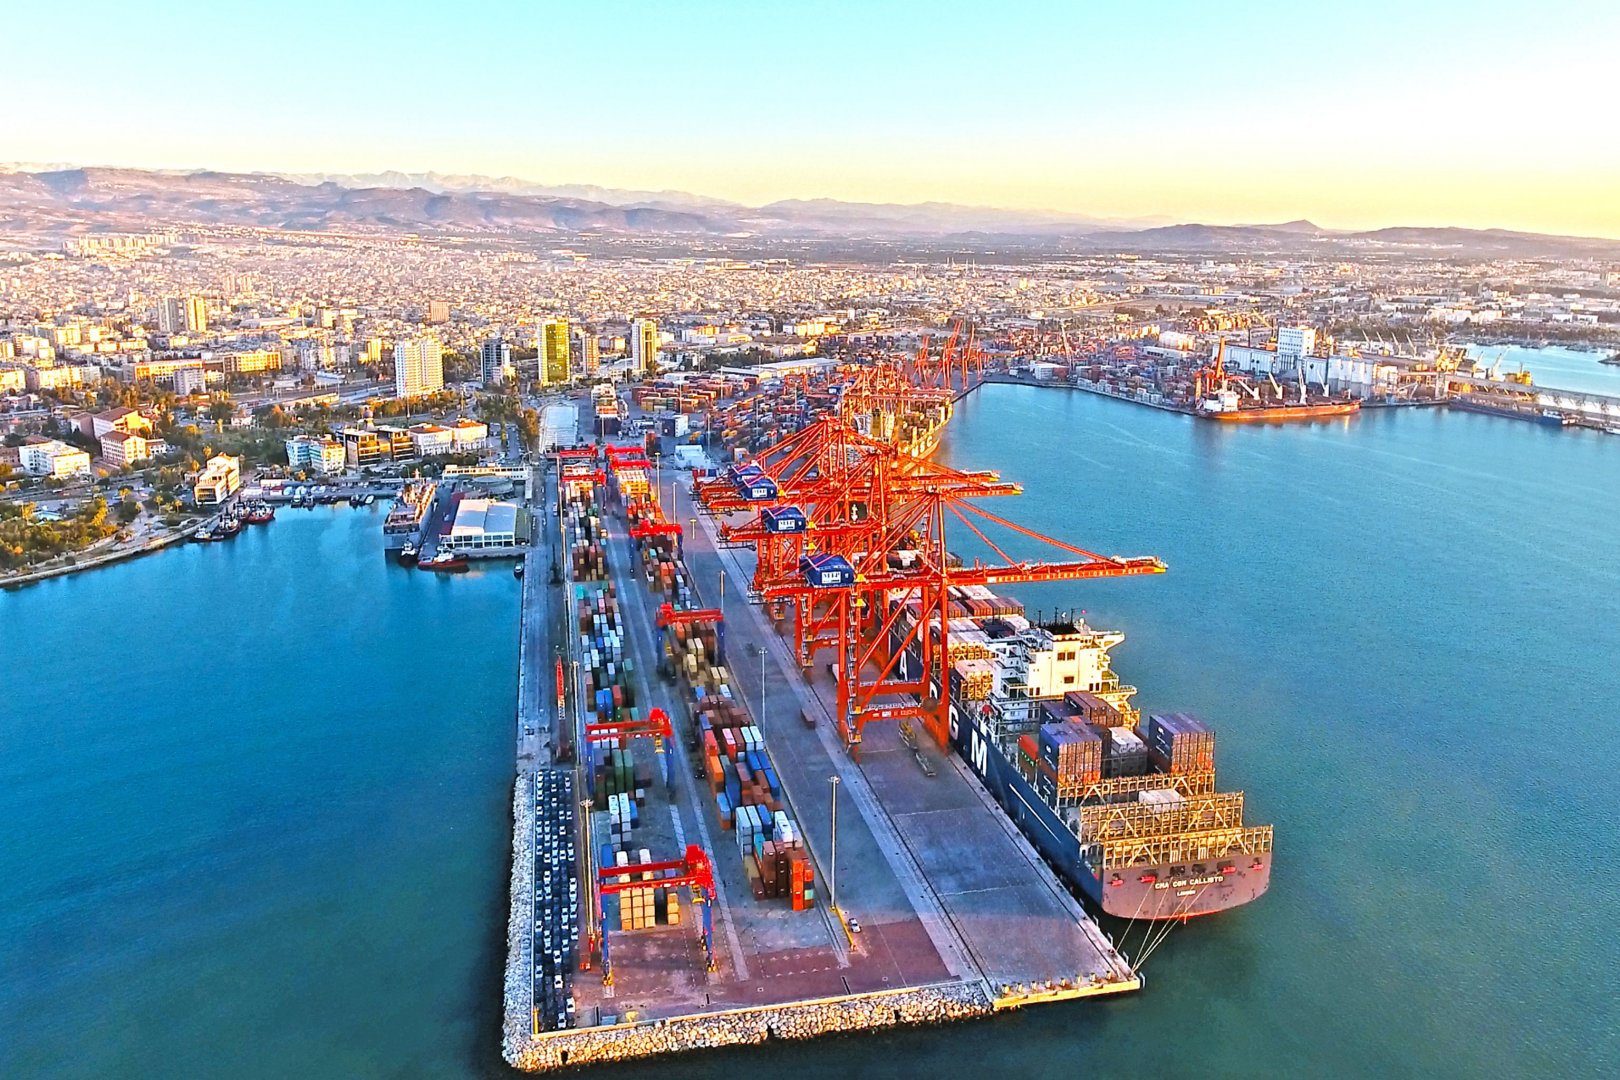 Yanvar-iyul aylarında Mersin limanı 2 mindən çox gəmi qəbul edib (ÖZƏL)